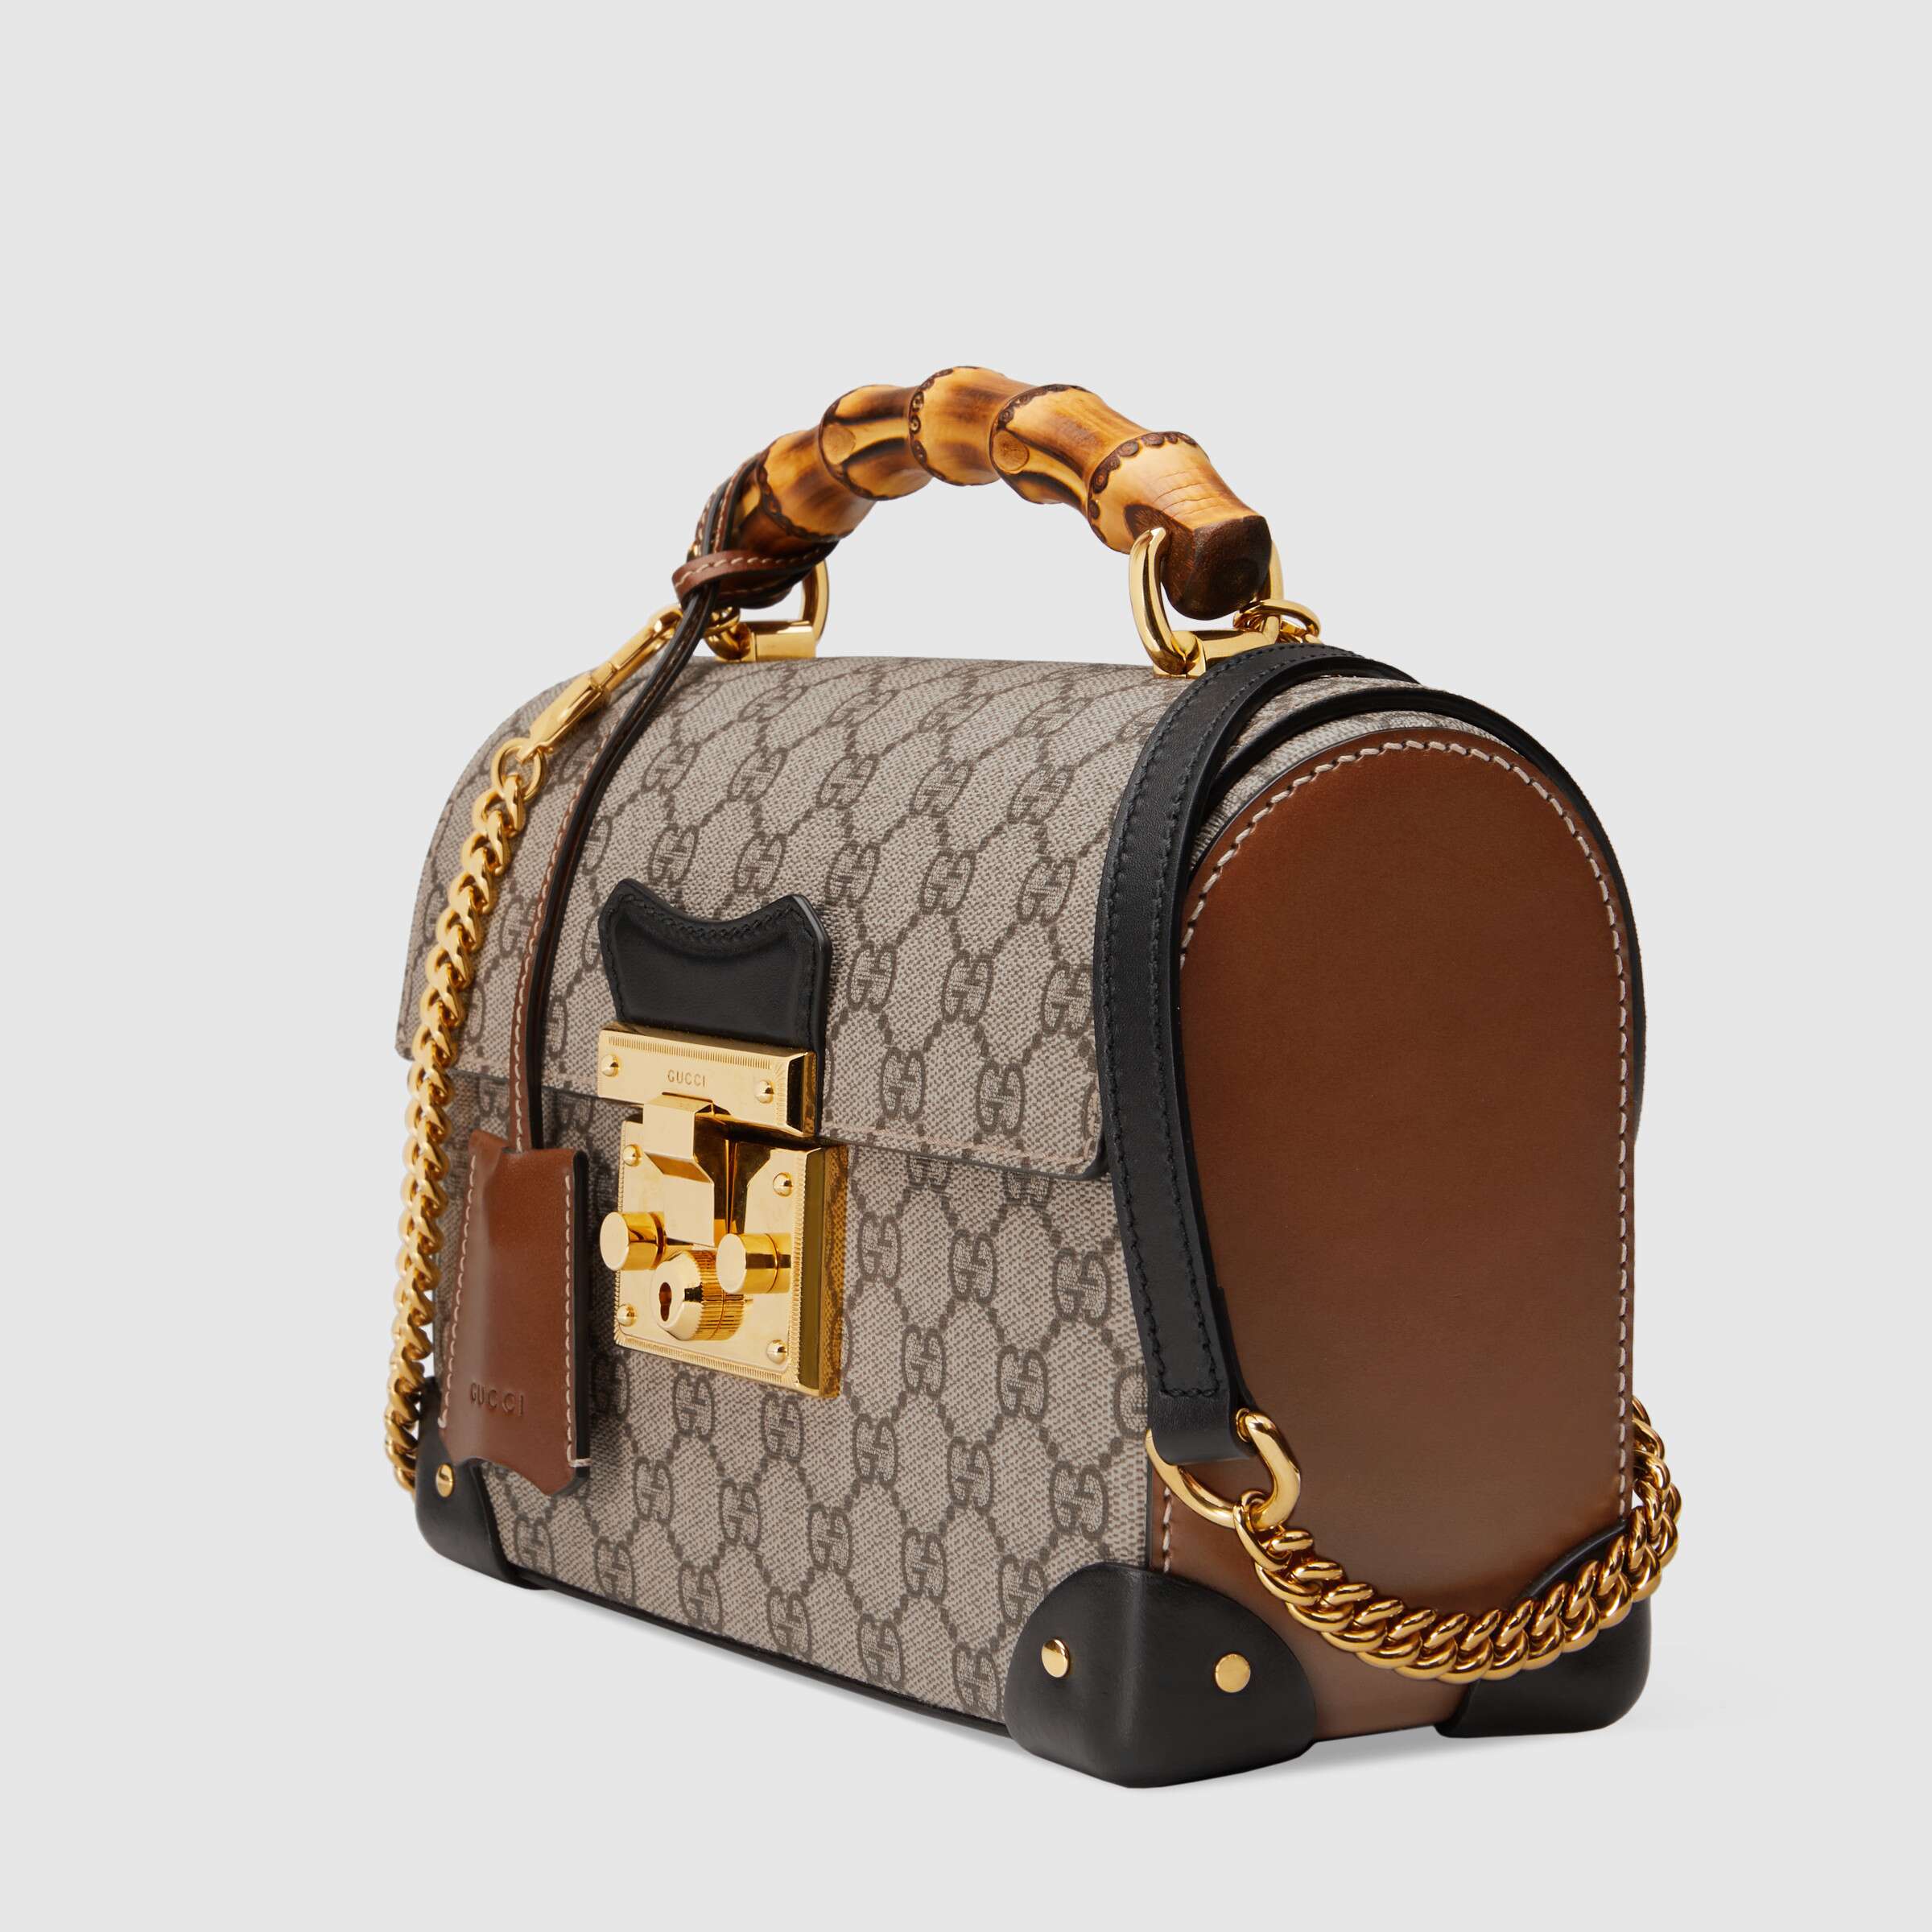 Gucci Padlock Small Bamboo Shoulder Bag GG Supreme